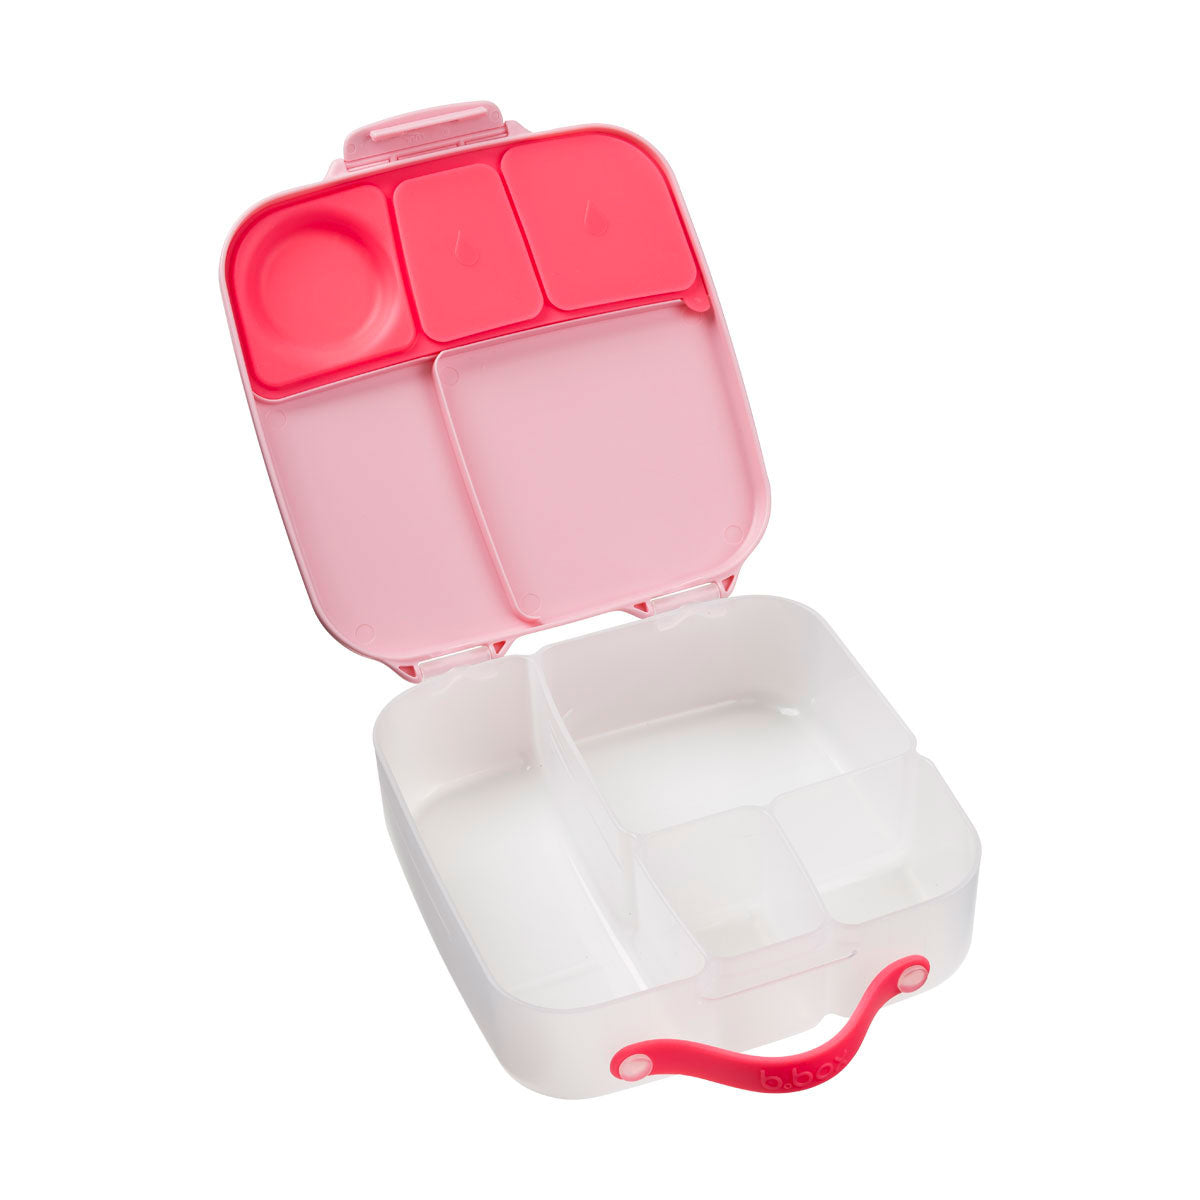 b.box: pudełko śniadaniowe z wkładem chłodzącym Lunchbox New School